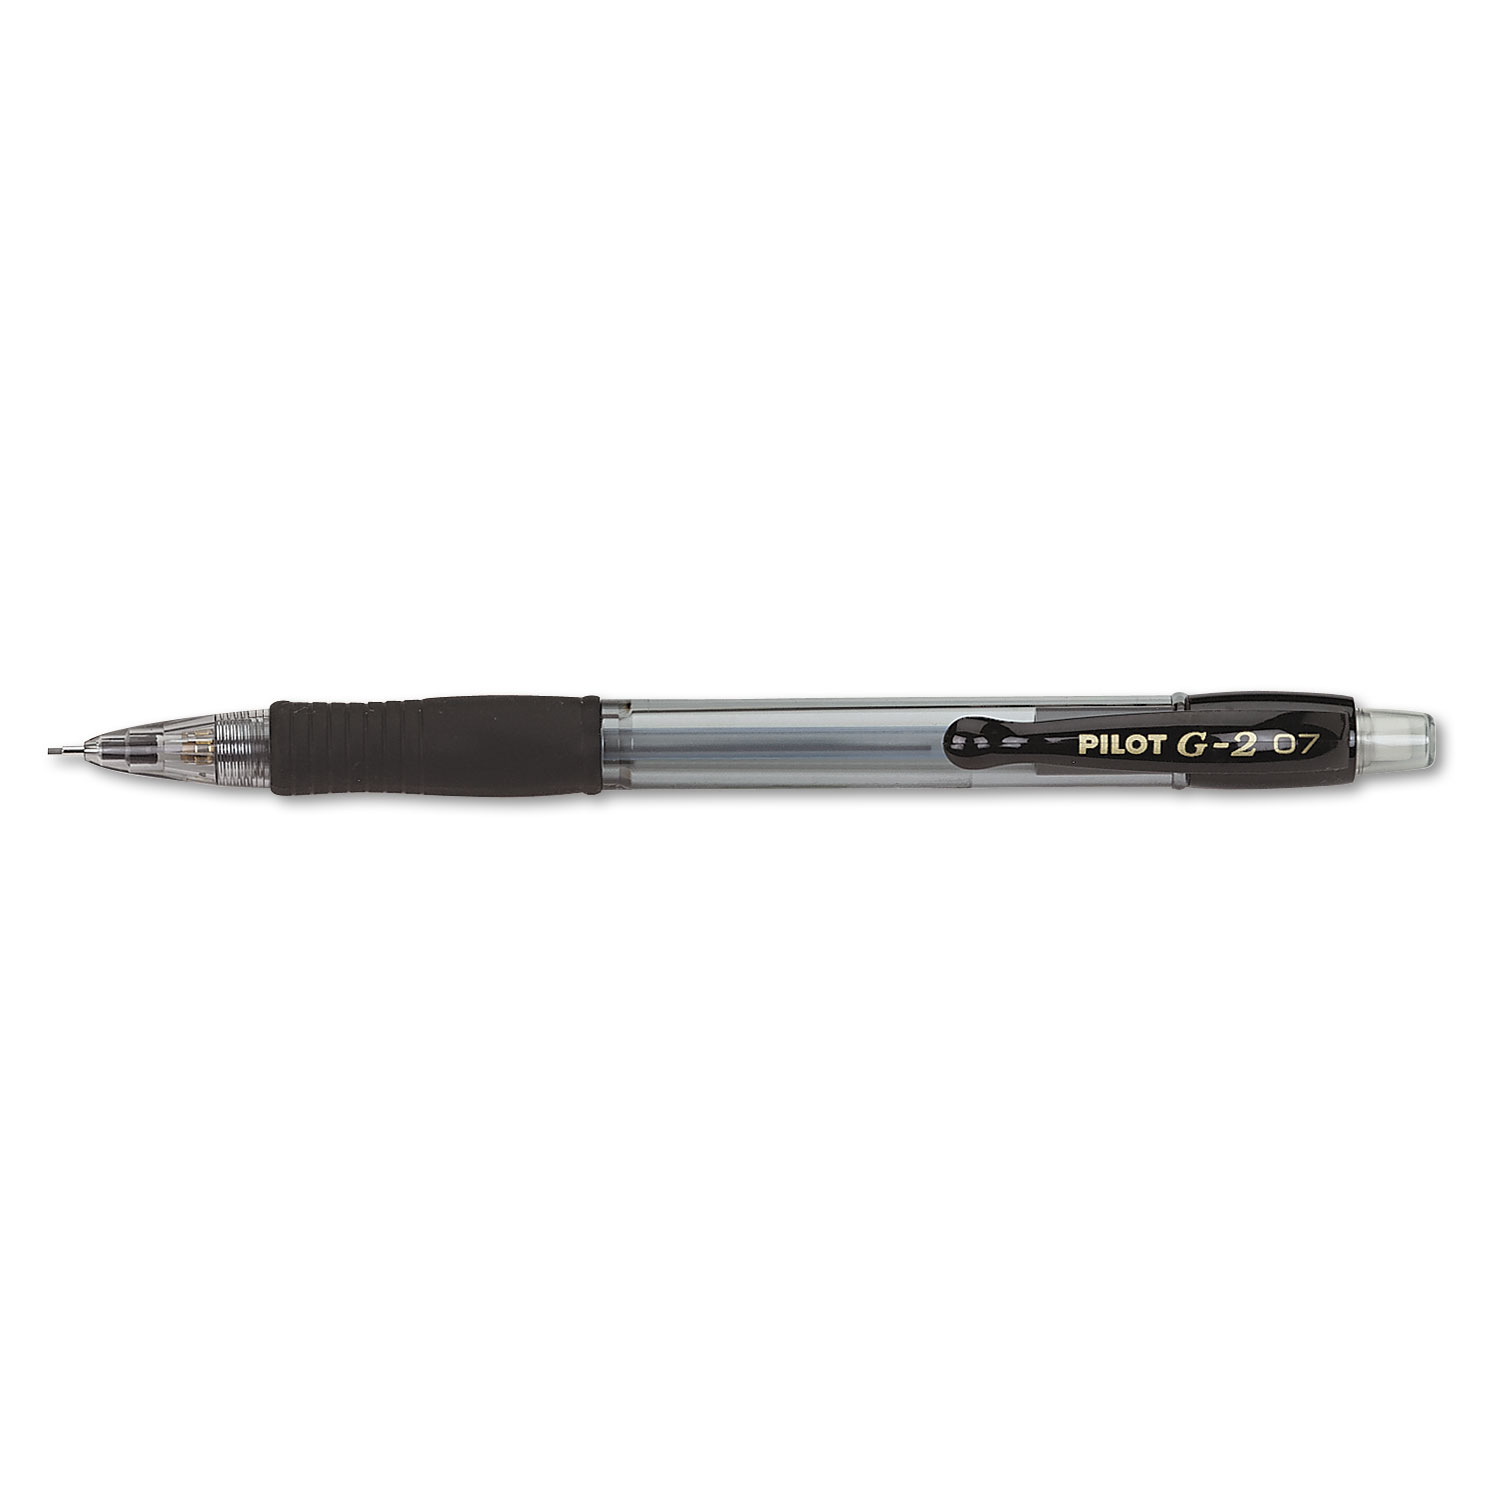  Pilot 51015 G2 Mechanical Pencil, 0.7 mm, HB (#2.5), Black Lead, Clear/Black Accents Barrel, Dozen (PIL51015) 